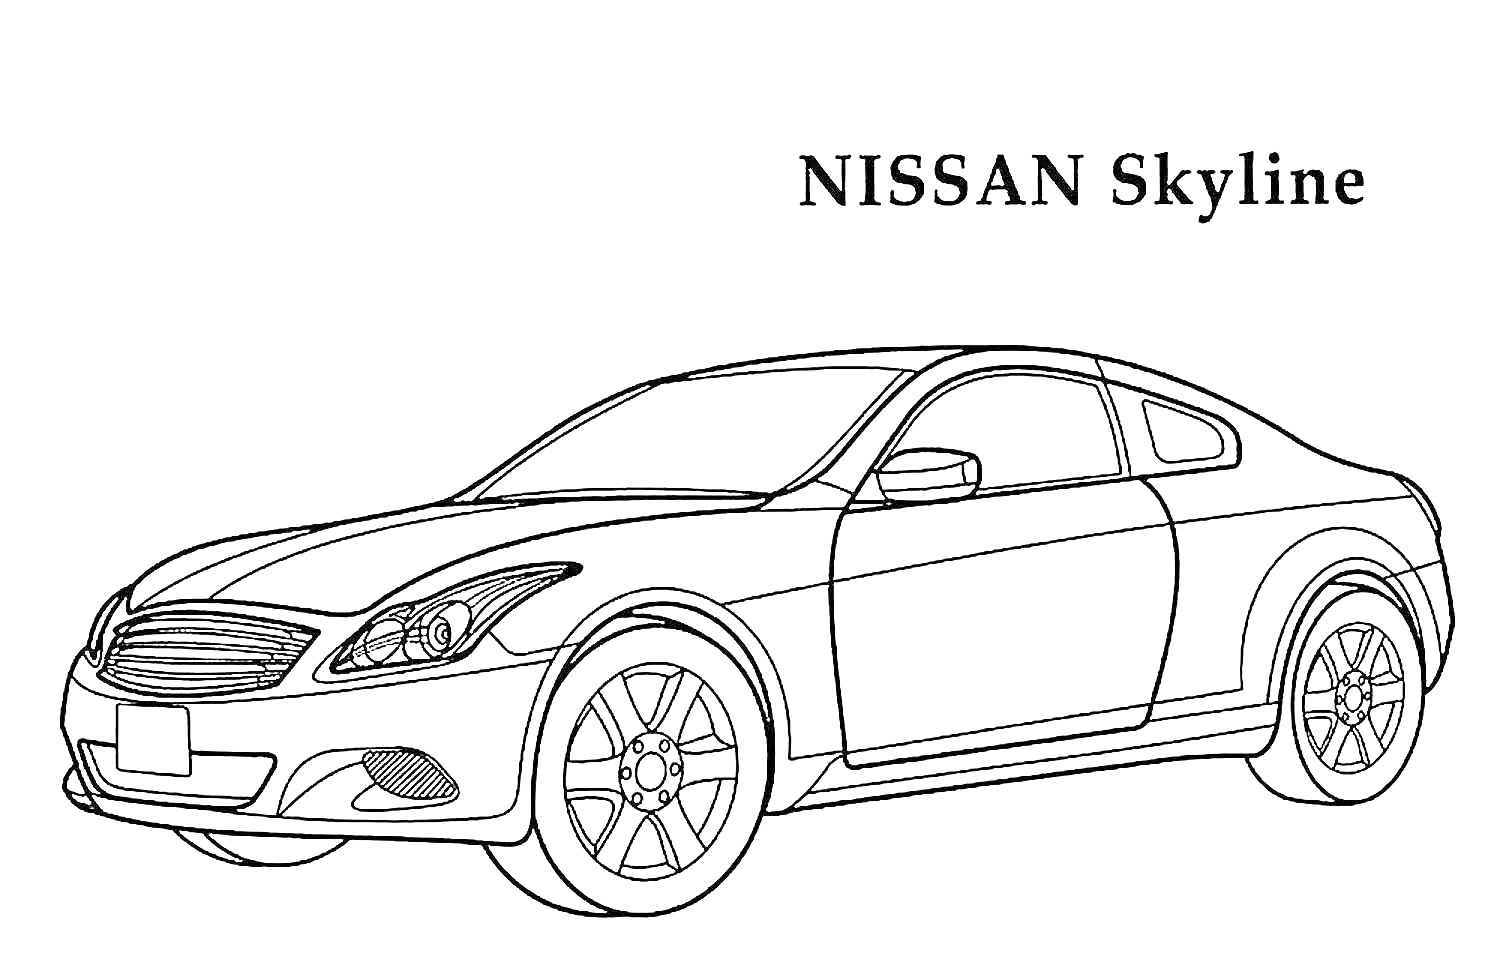 Раскраска автомобиля NISSAN Skyline с видом сбоку